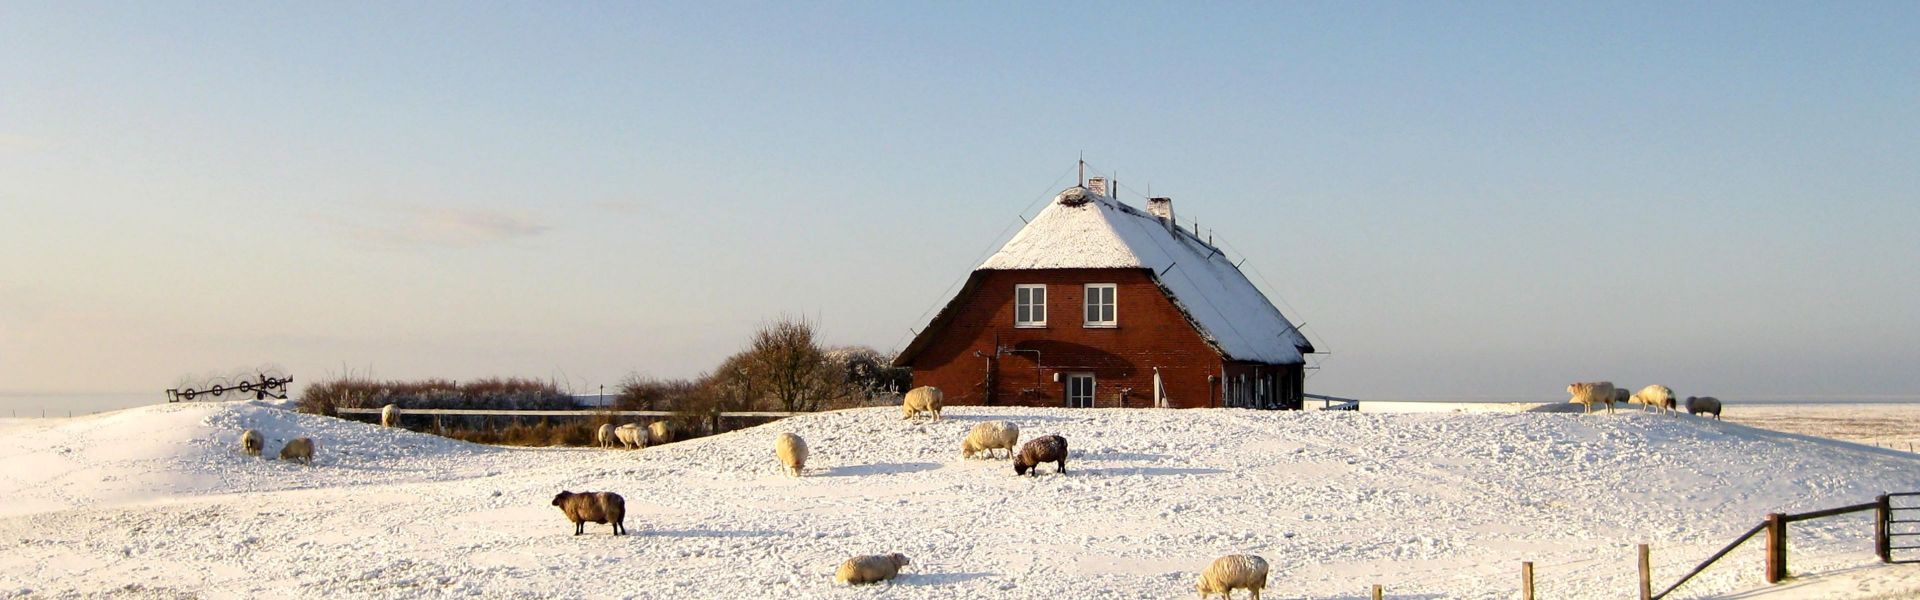 Hallig Gröde im Winter, Hallighaus, Schafe auf schneebeckter Warft